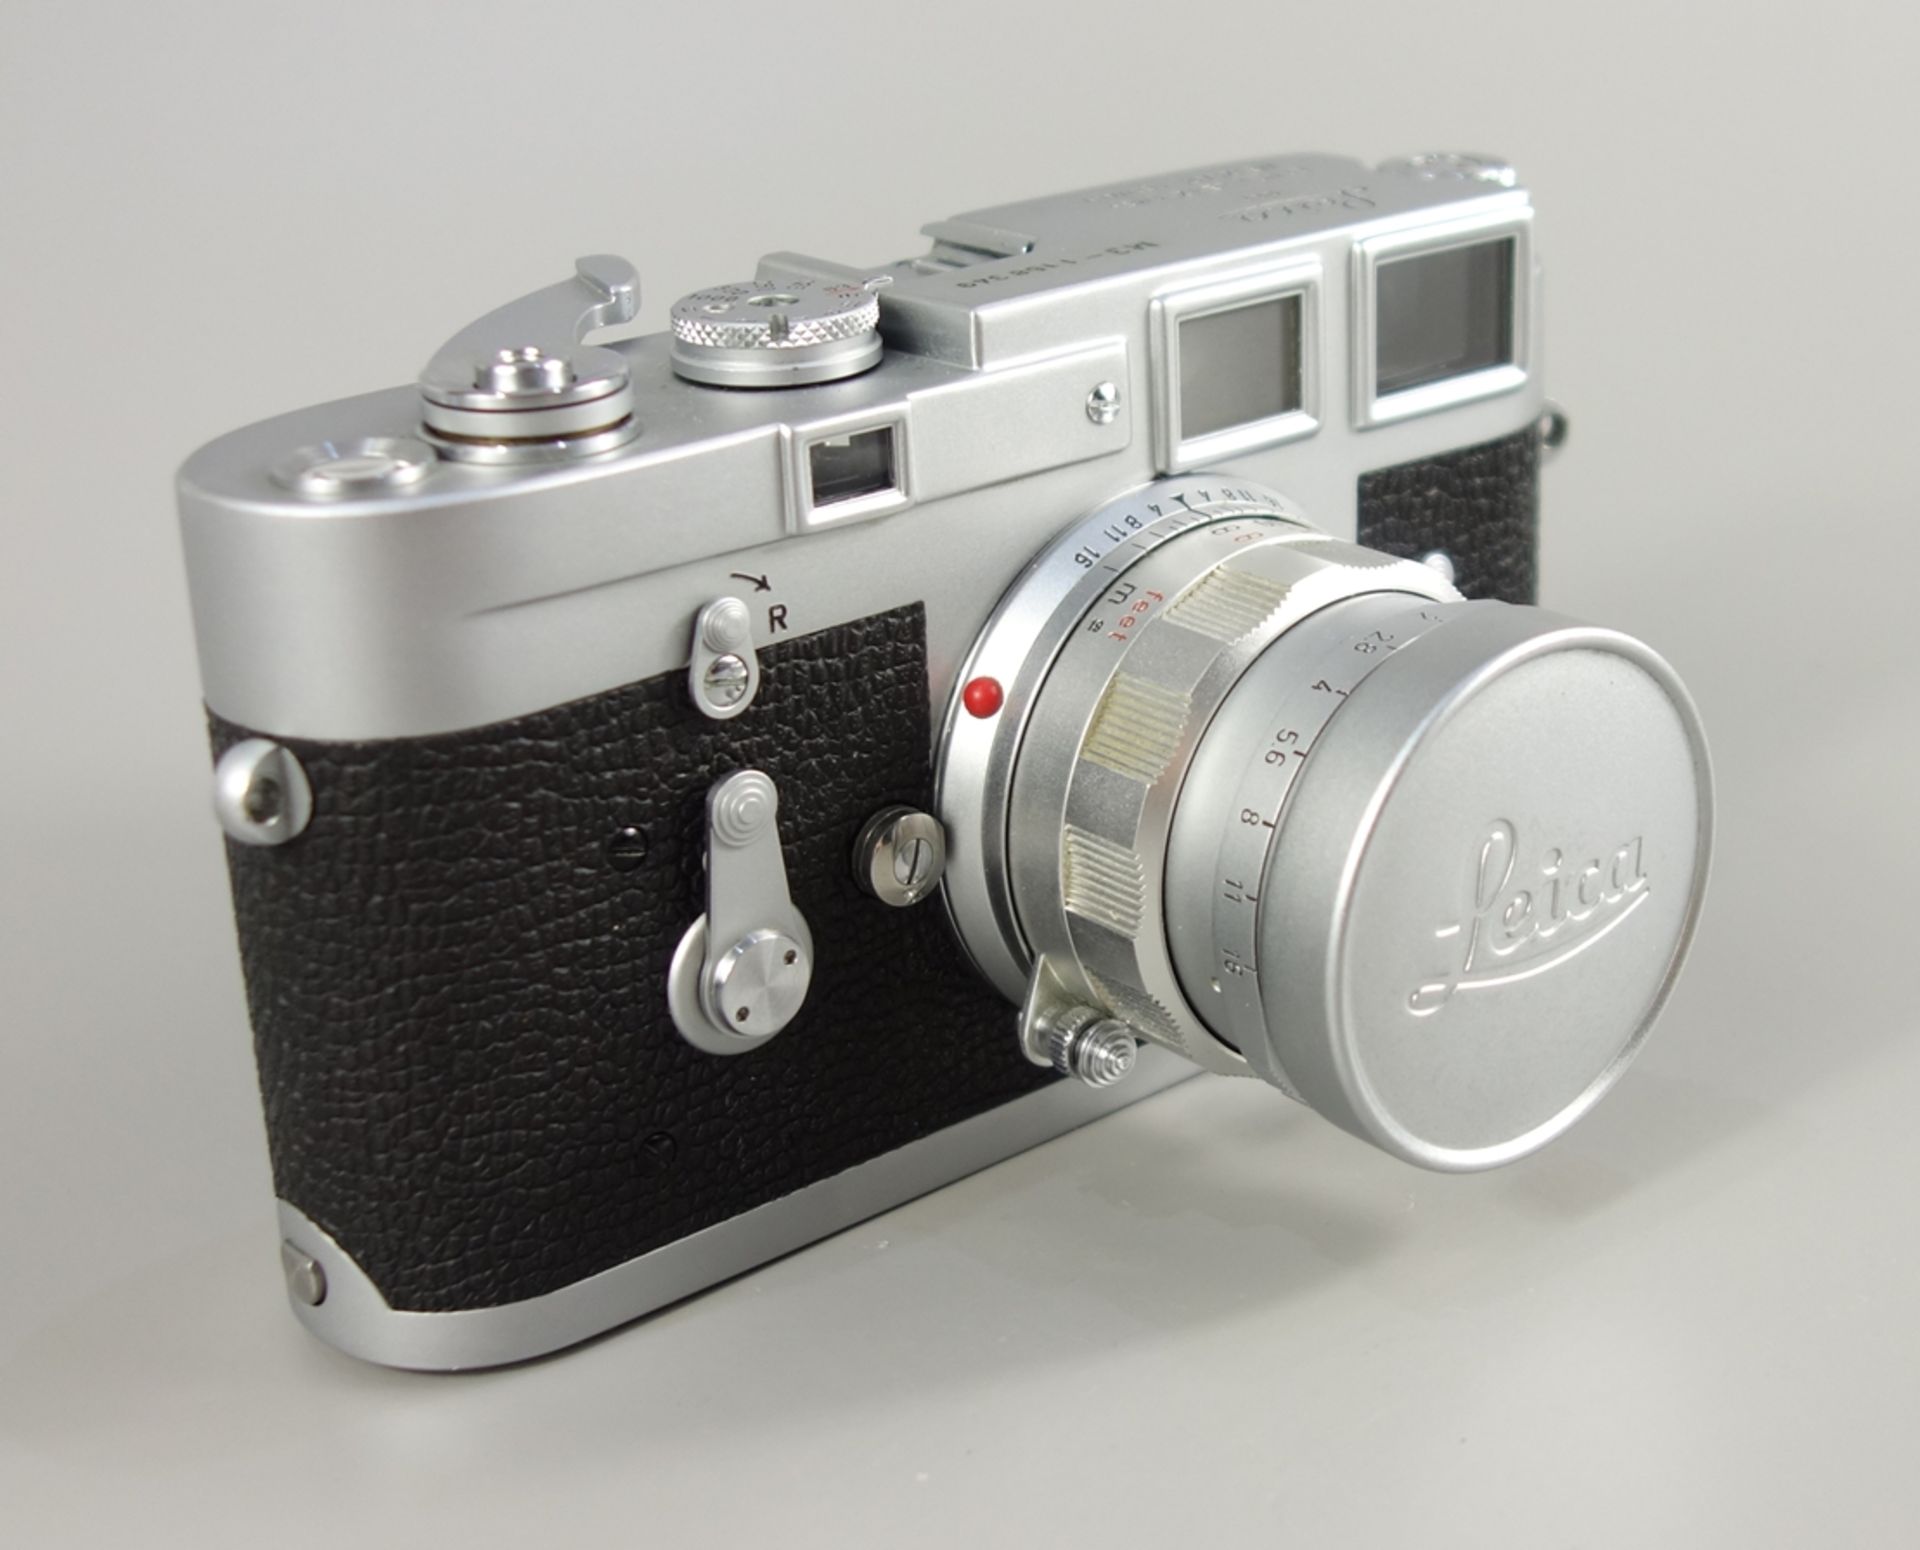 Leica M3, Messsucherkamera, Ernst Leitz Wetzlar, 1966, Serien-Nr. 1158349, mit Objektiv Leitz